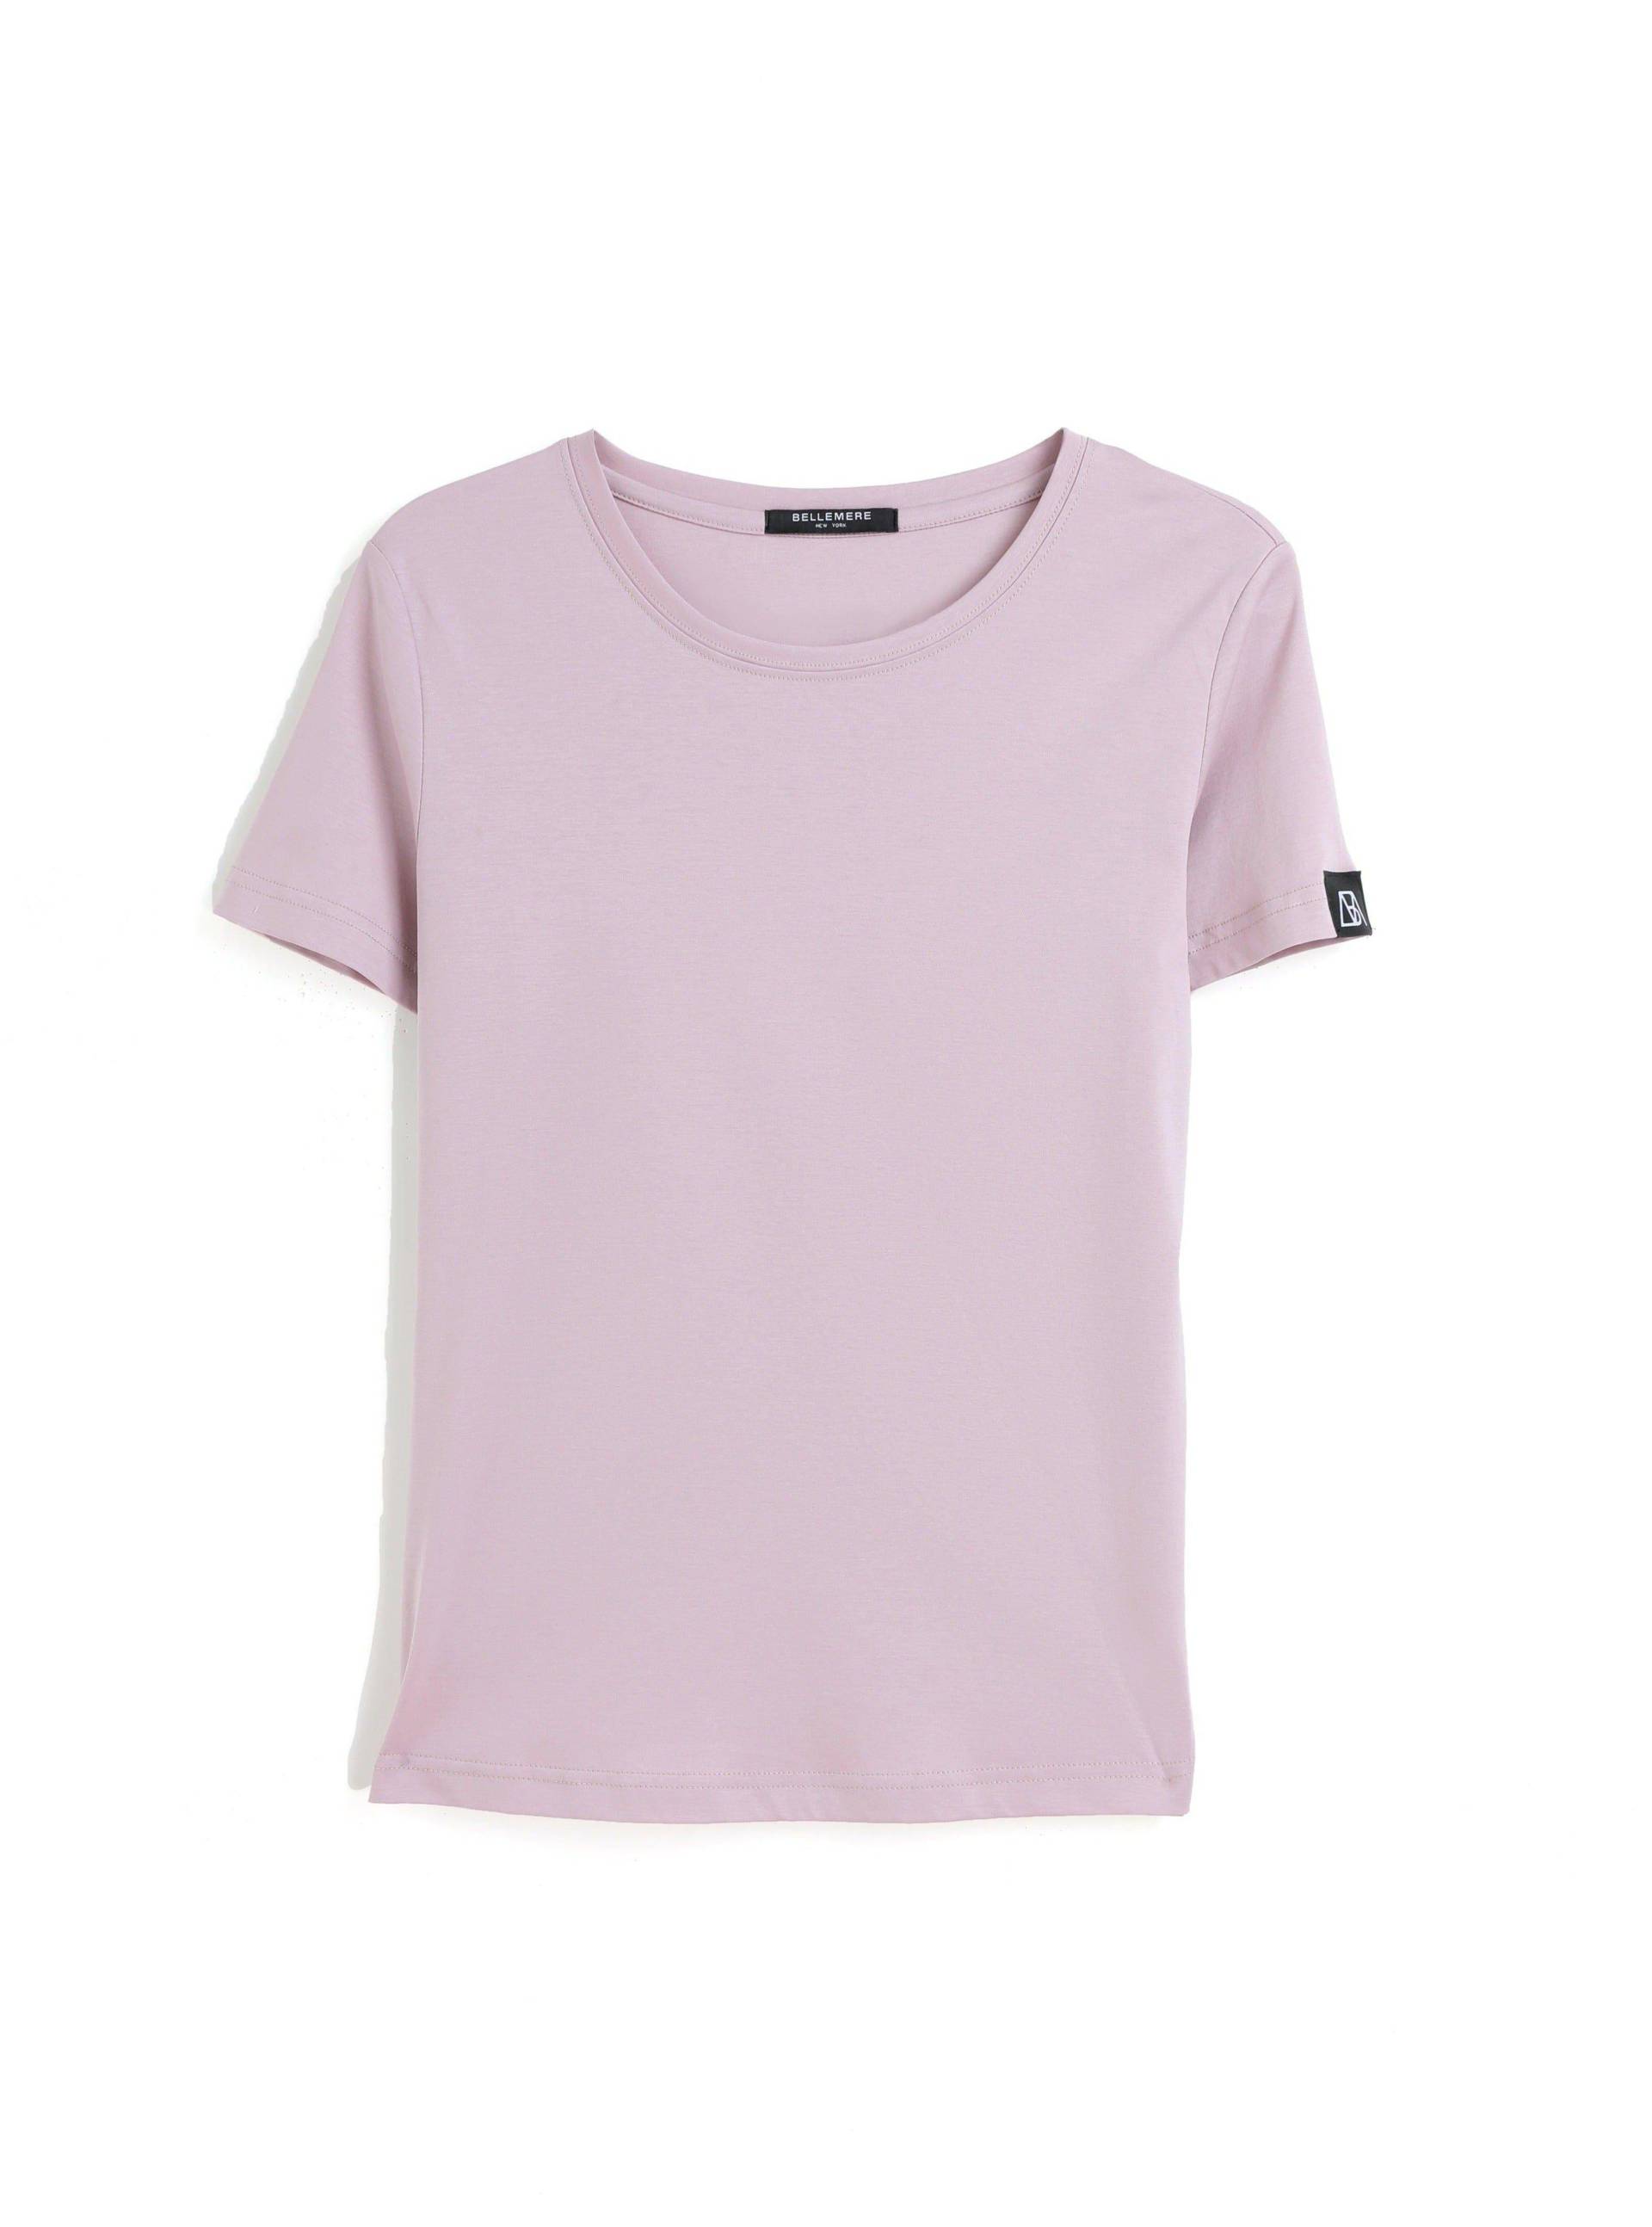 Grand T-shirt Aus Baumwolle Mit Rundhalsausschnitt, 160 G Damen Pink M von Bellemere New York